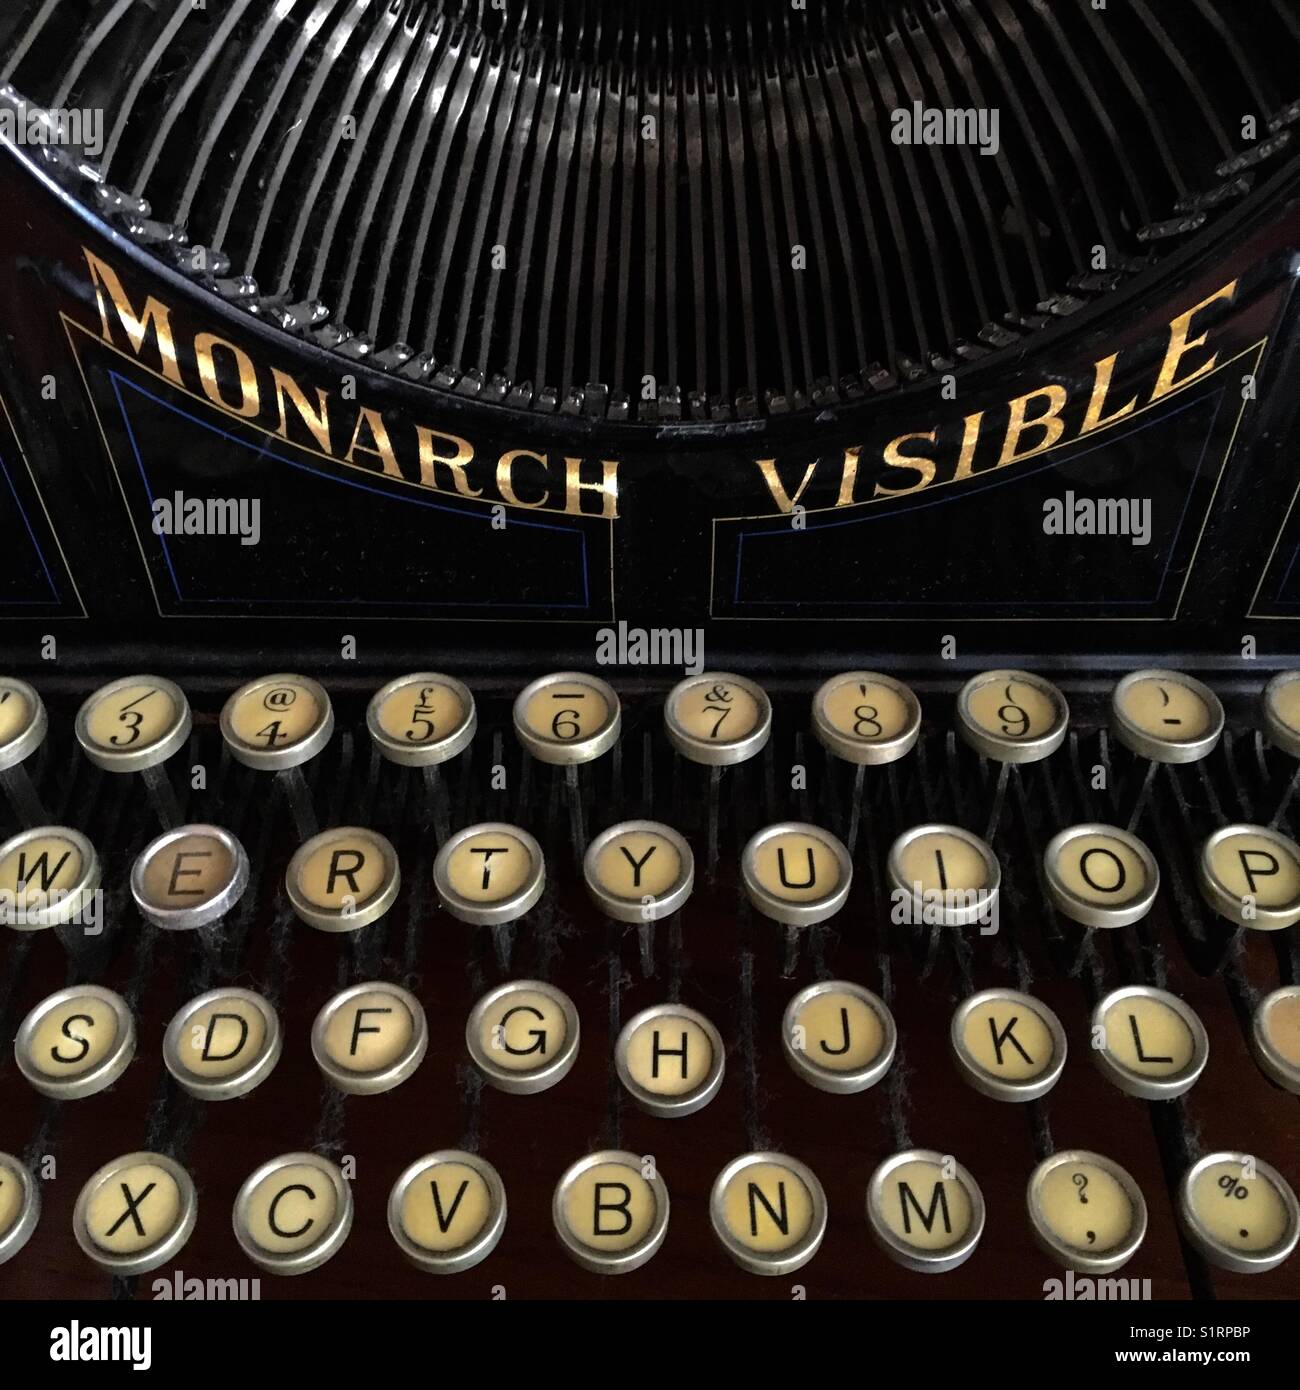 Monarch sichtbar vintage Schreibmaschine Stockfoto